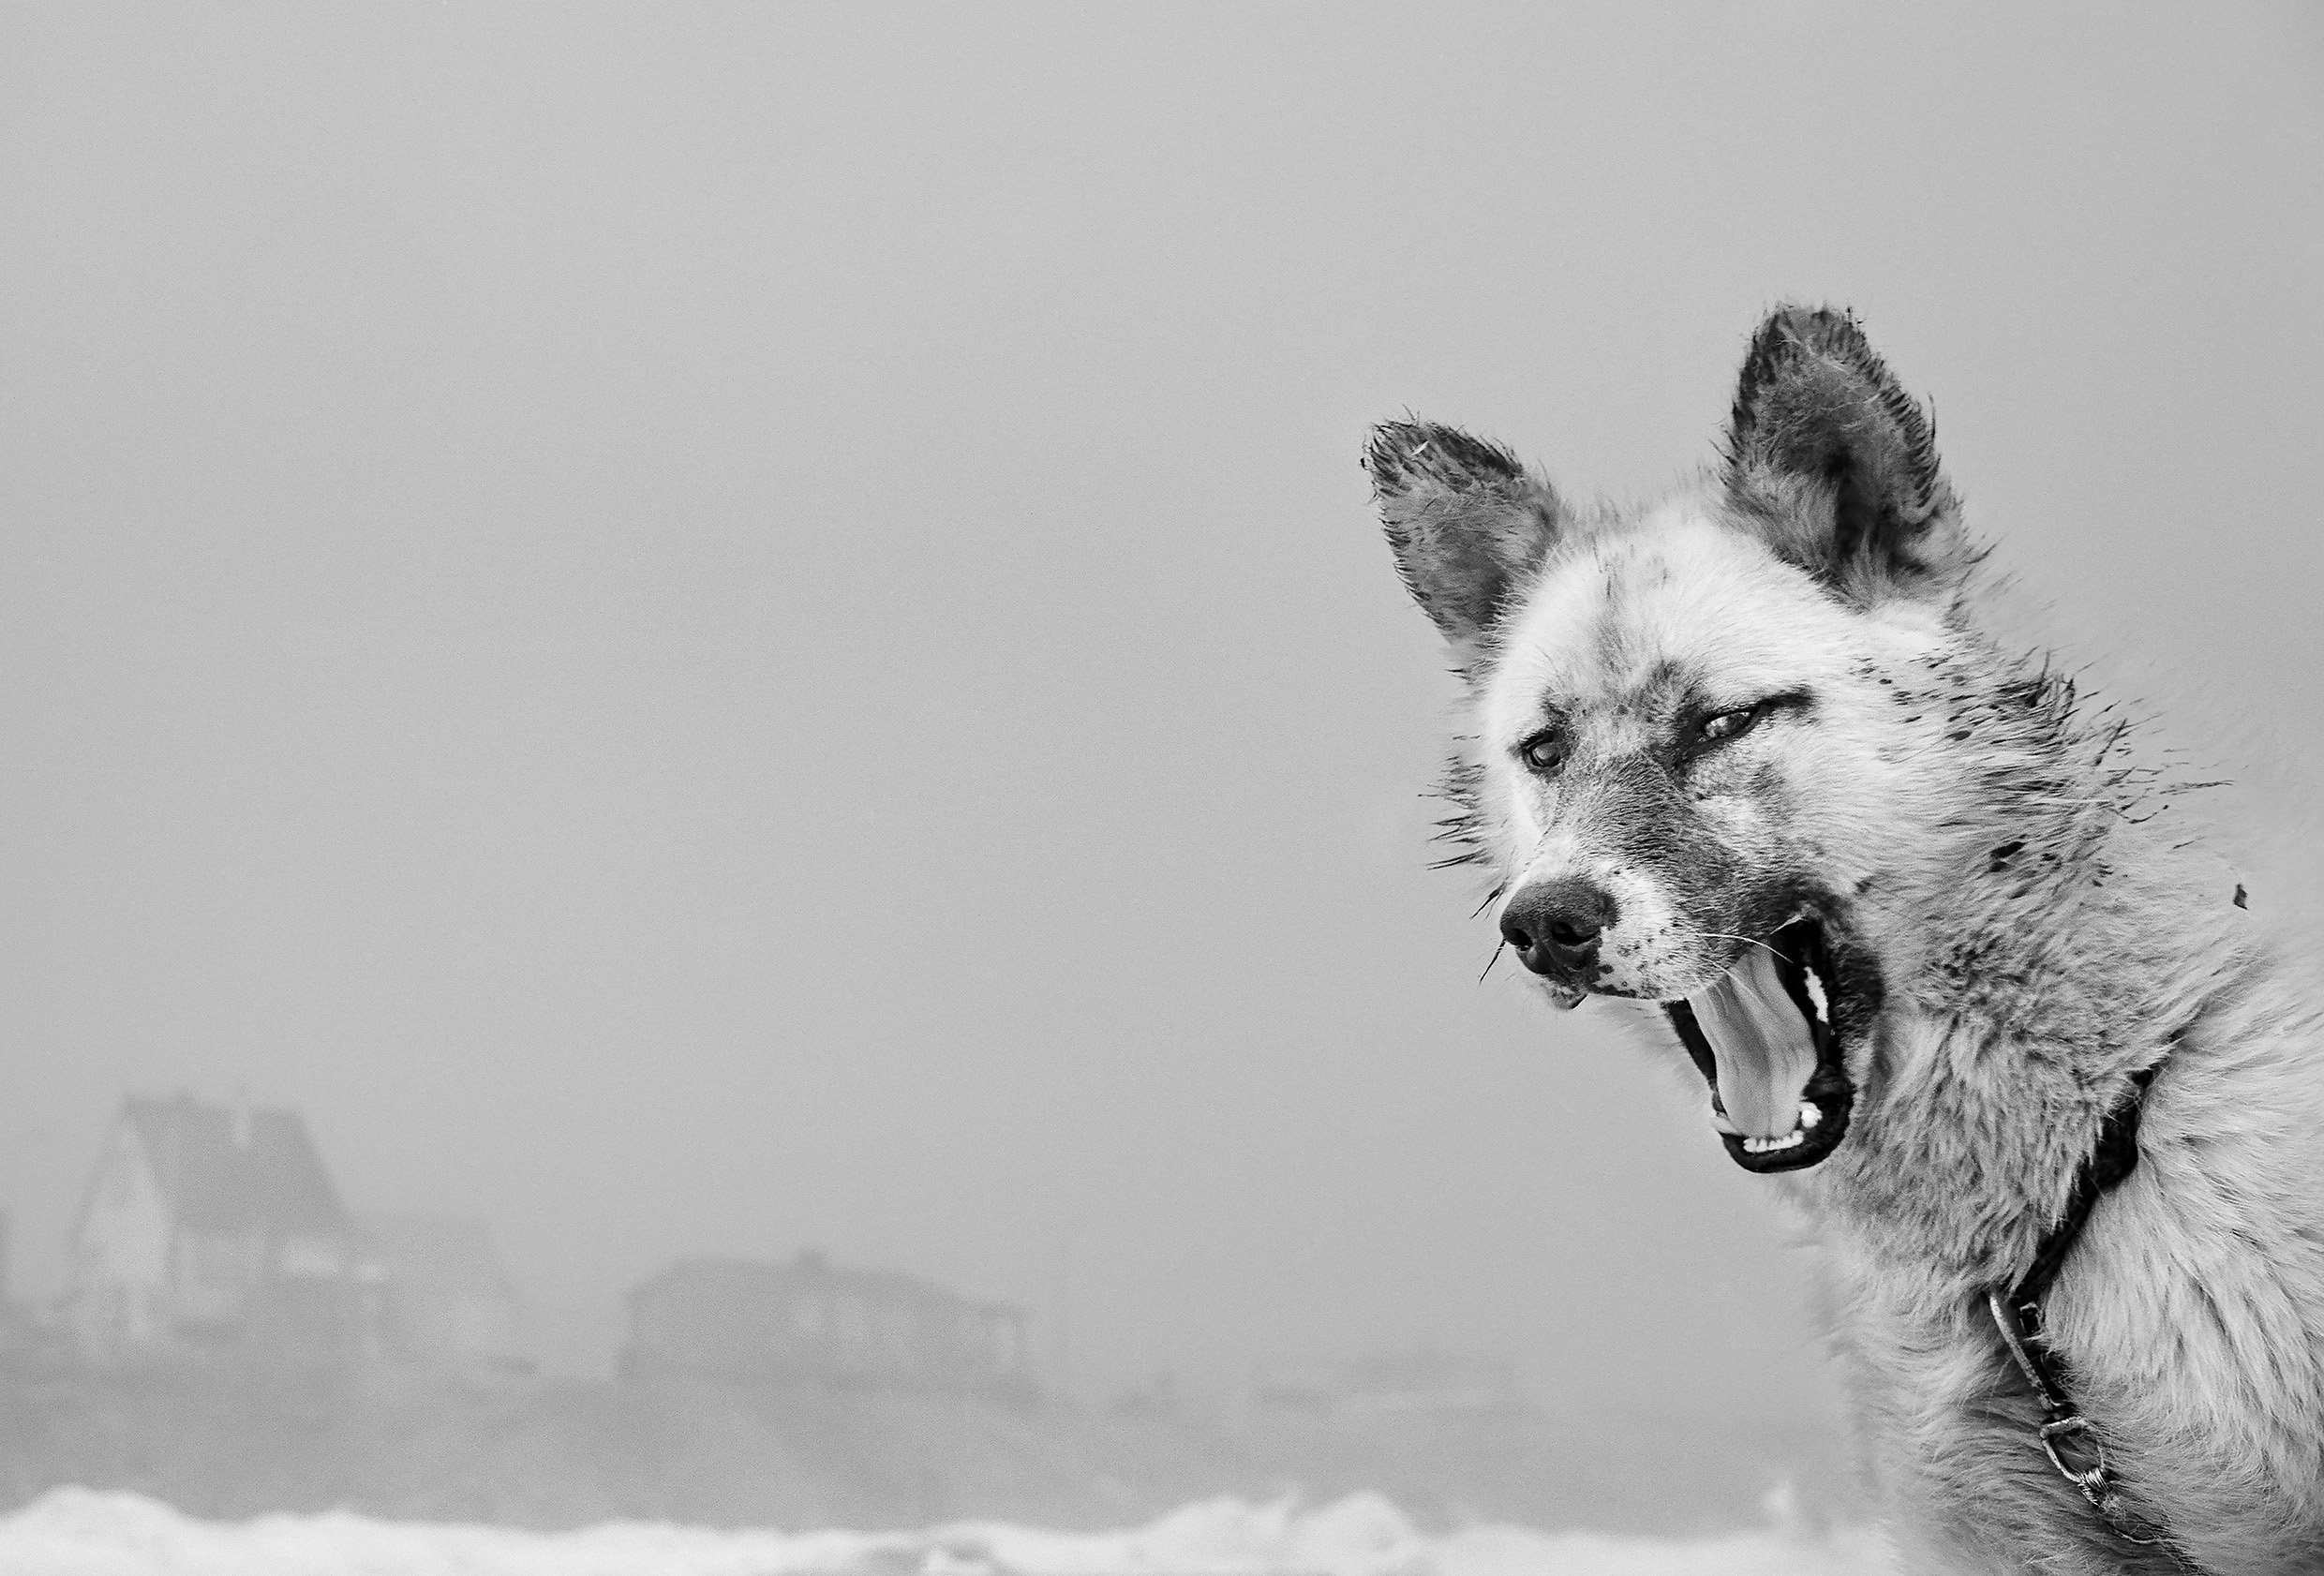 Schwarzweiß-Foto: Im Vordergrund rechts ein Hund mit aufgerissenem Maul, im Hintergrund einige Häuser